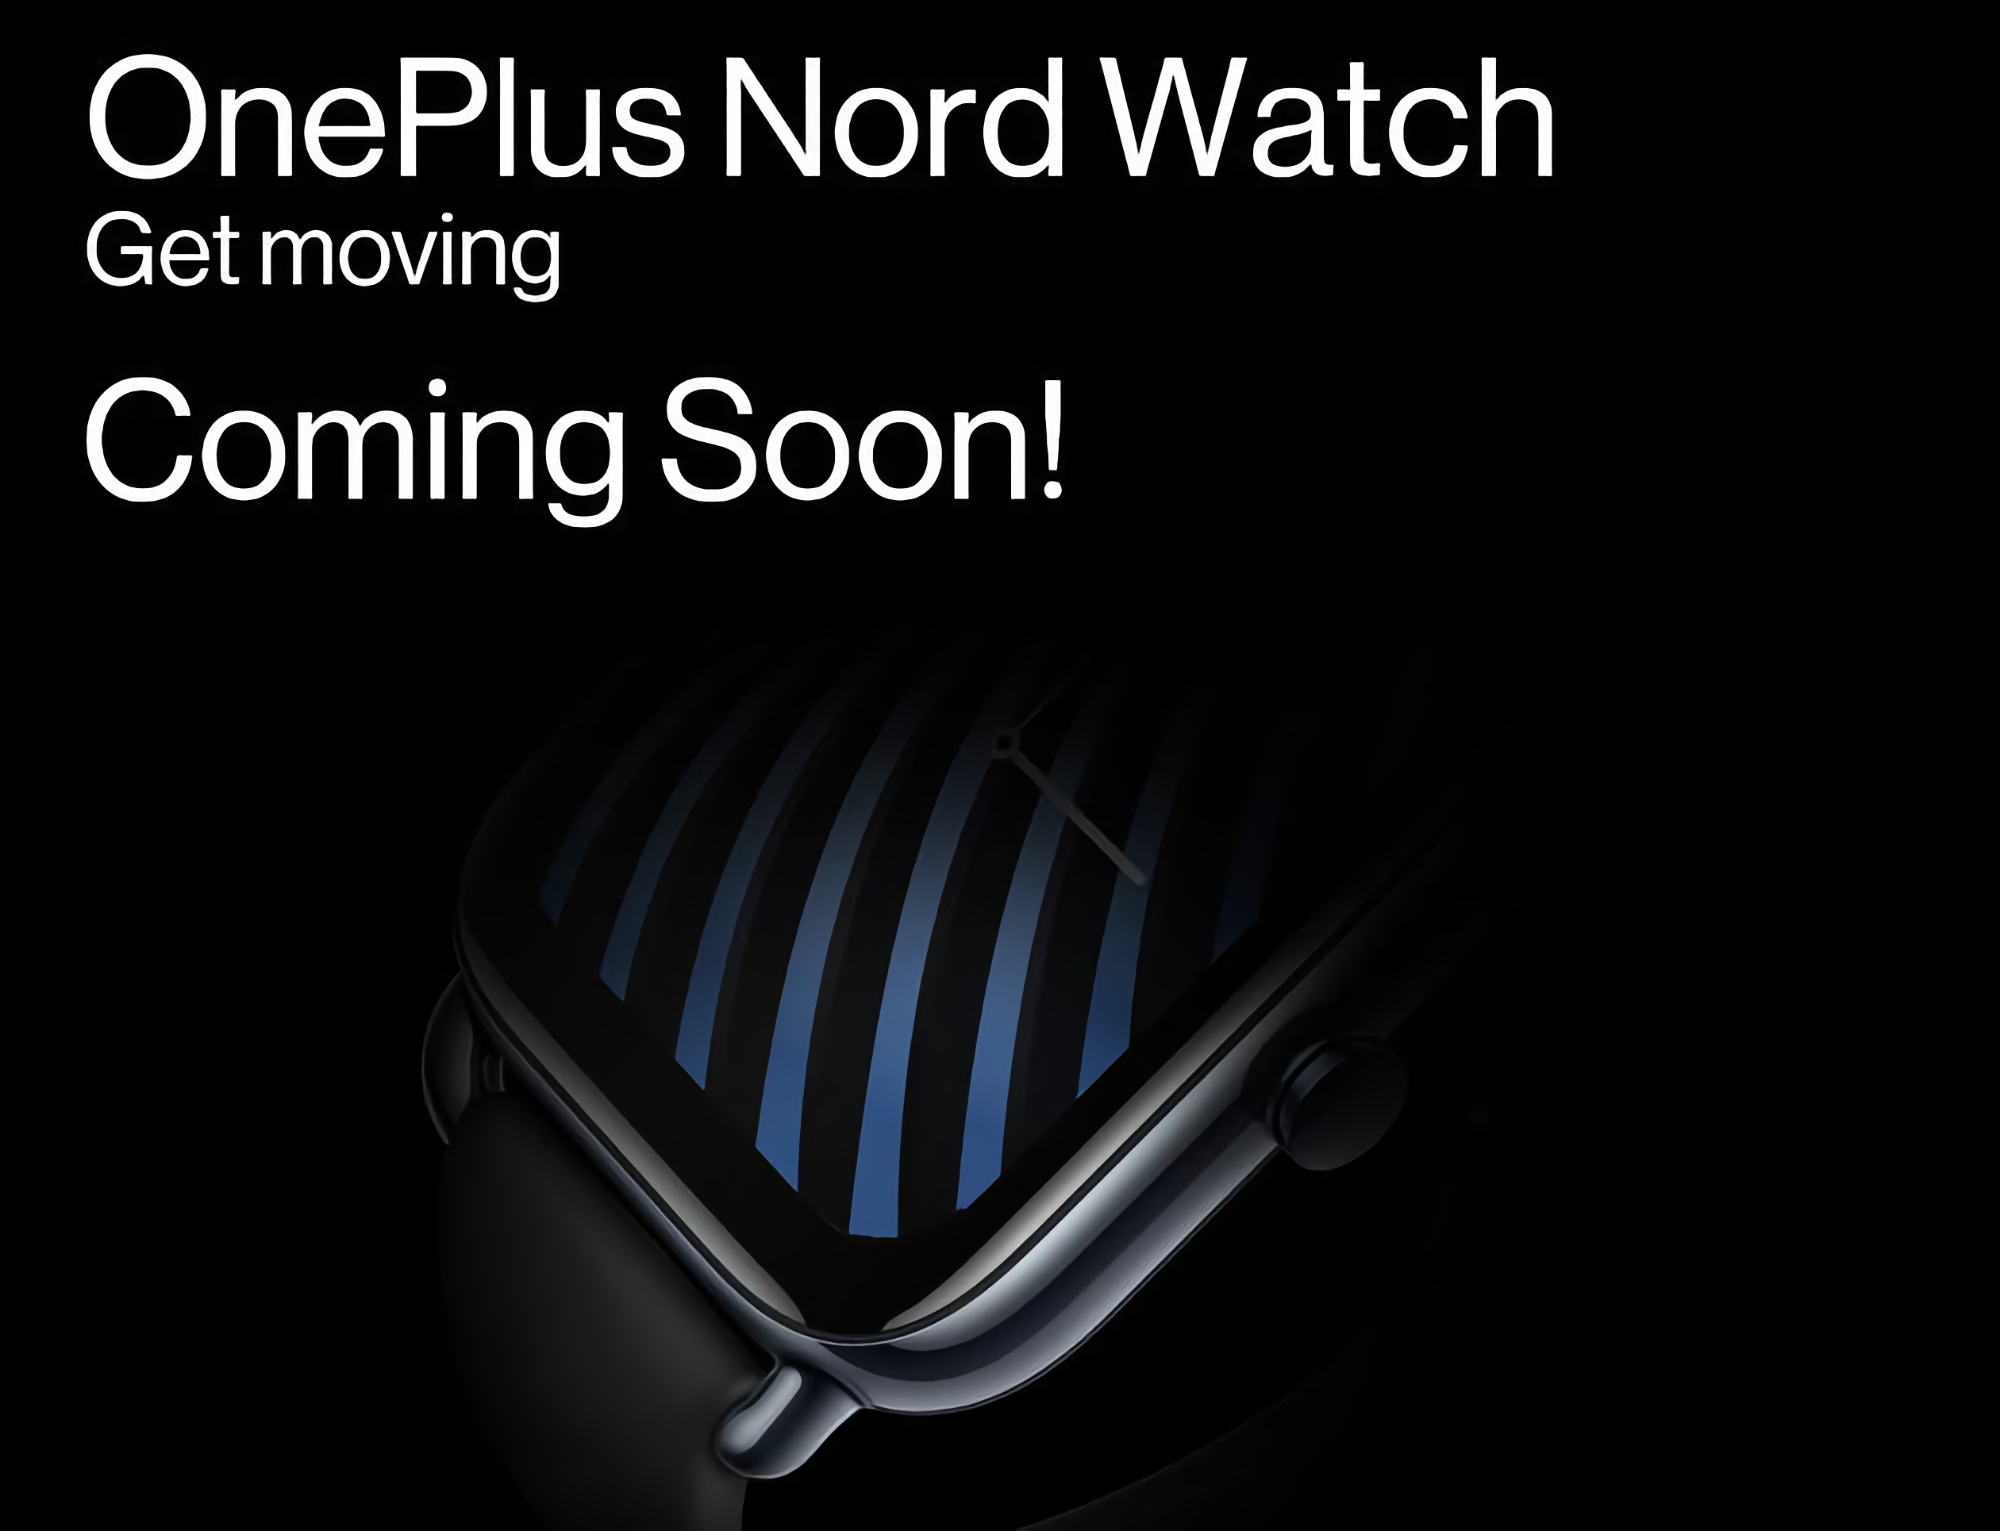 Insider : La OnePlus Nord Watch sera équipée d'un écran AMOLED, d'une batterie d'une autonomie de 10 jours et de 105 modes sportifs.